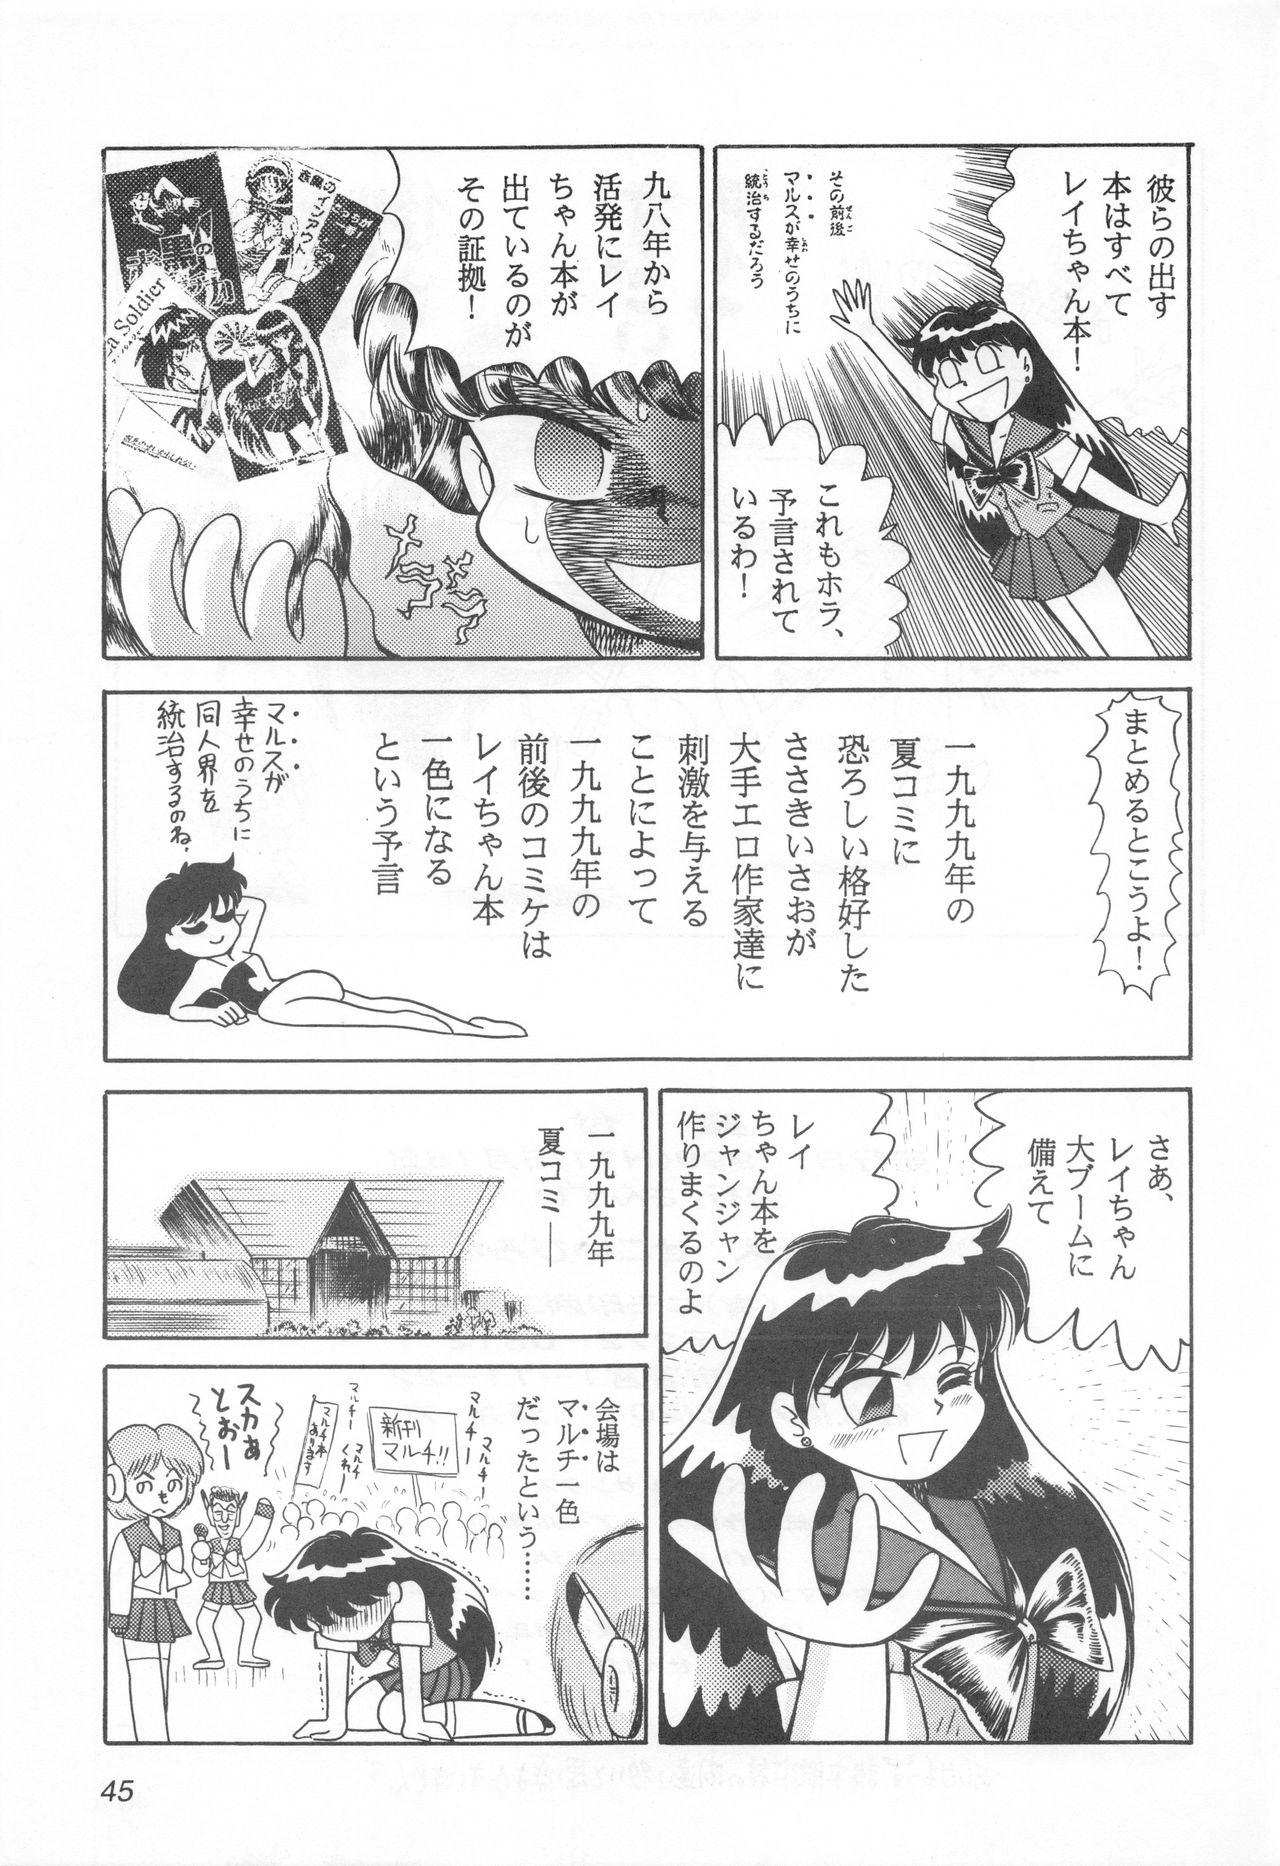 Masturbate Mimizu no Ami-chan Vol. 2 - Sailor moon Ecuador - Page 44